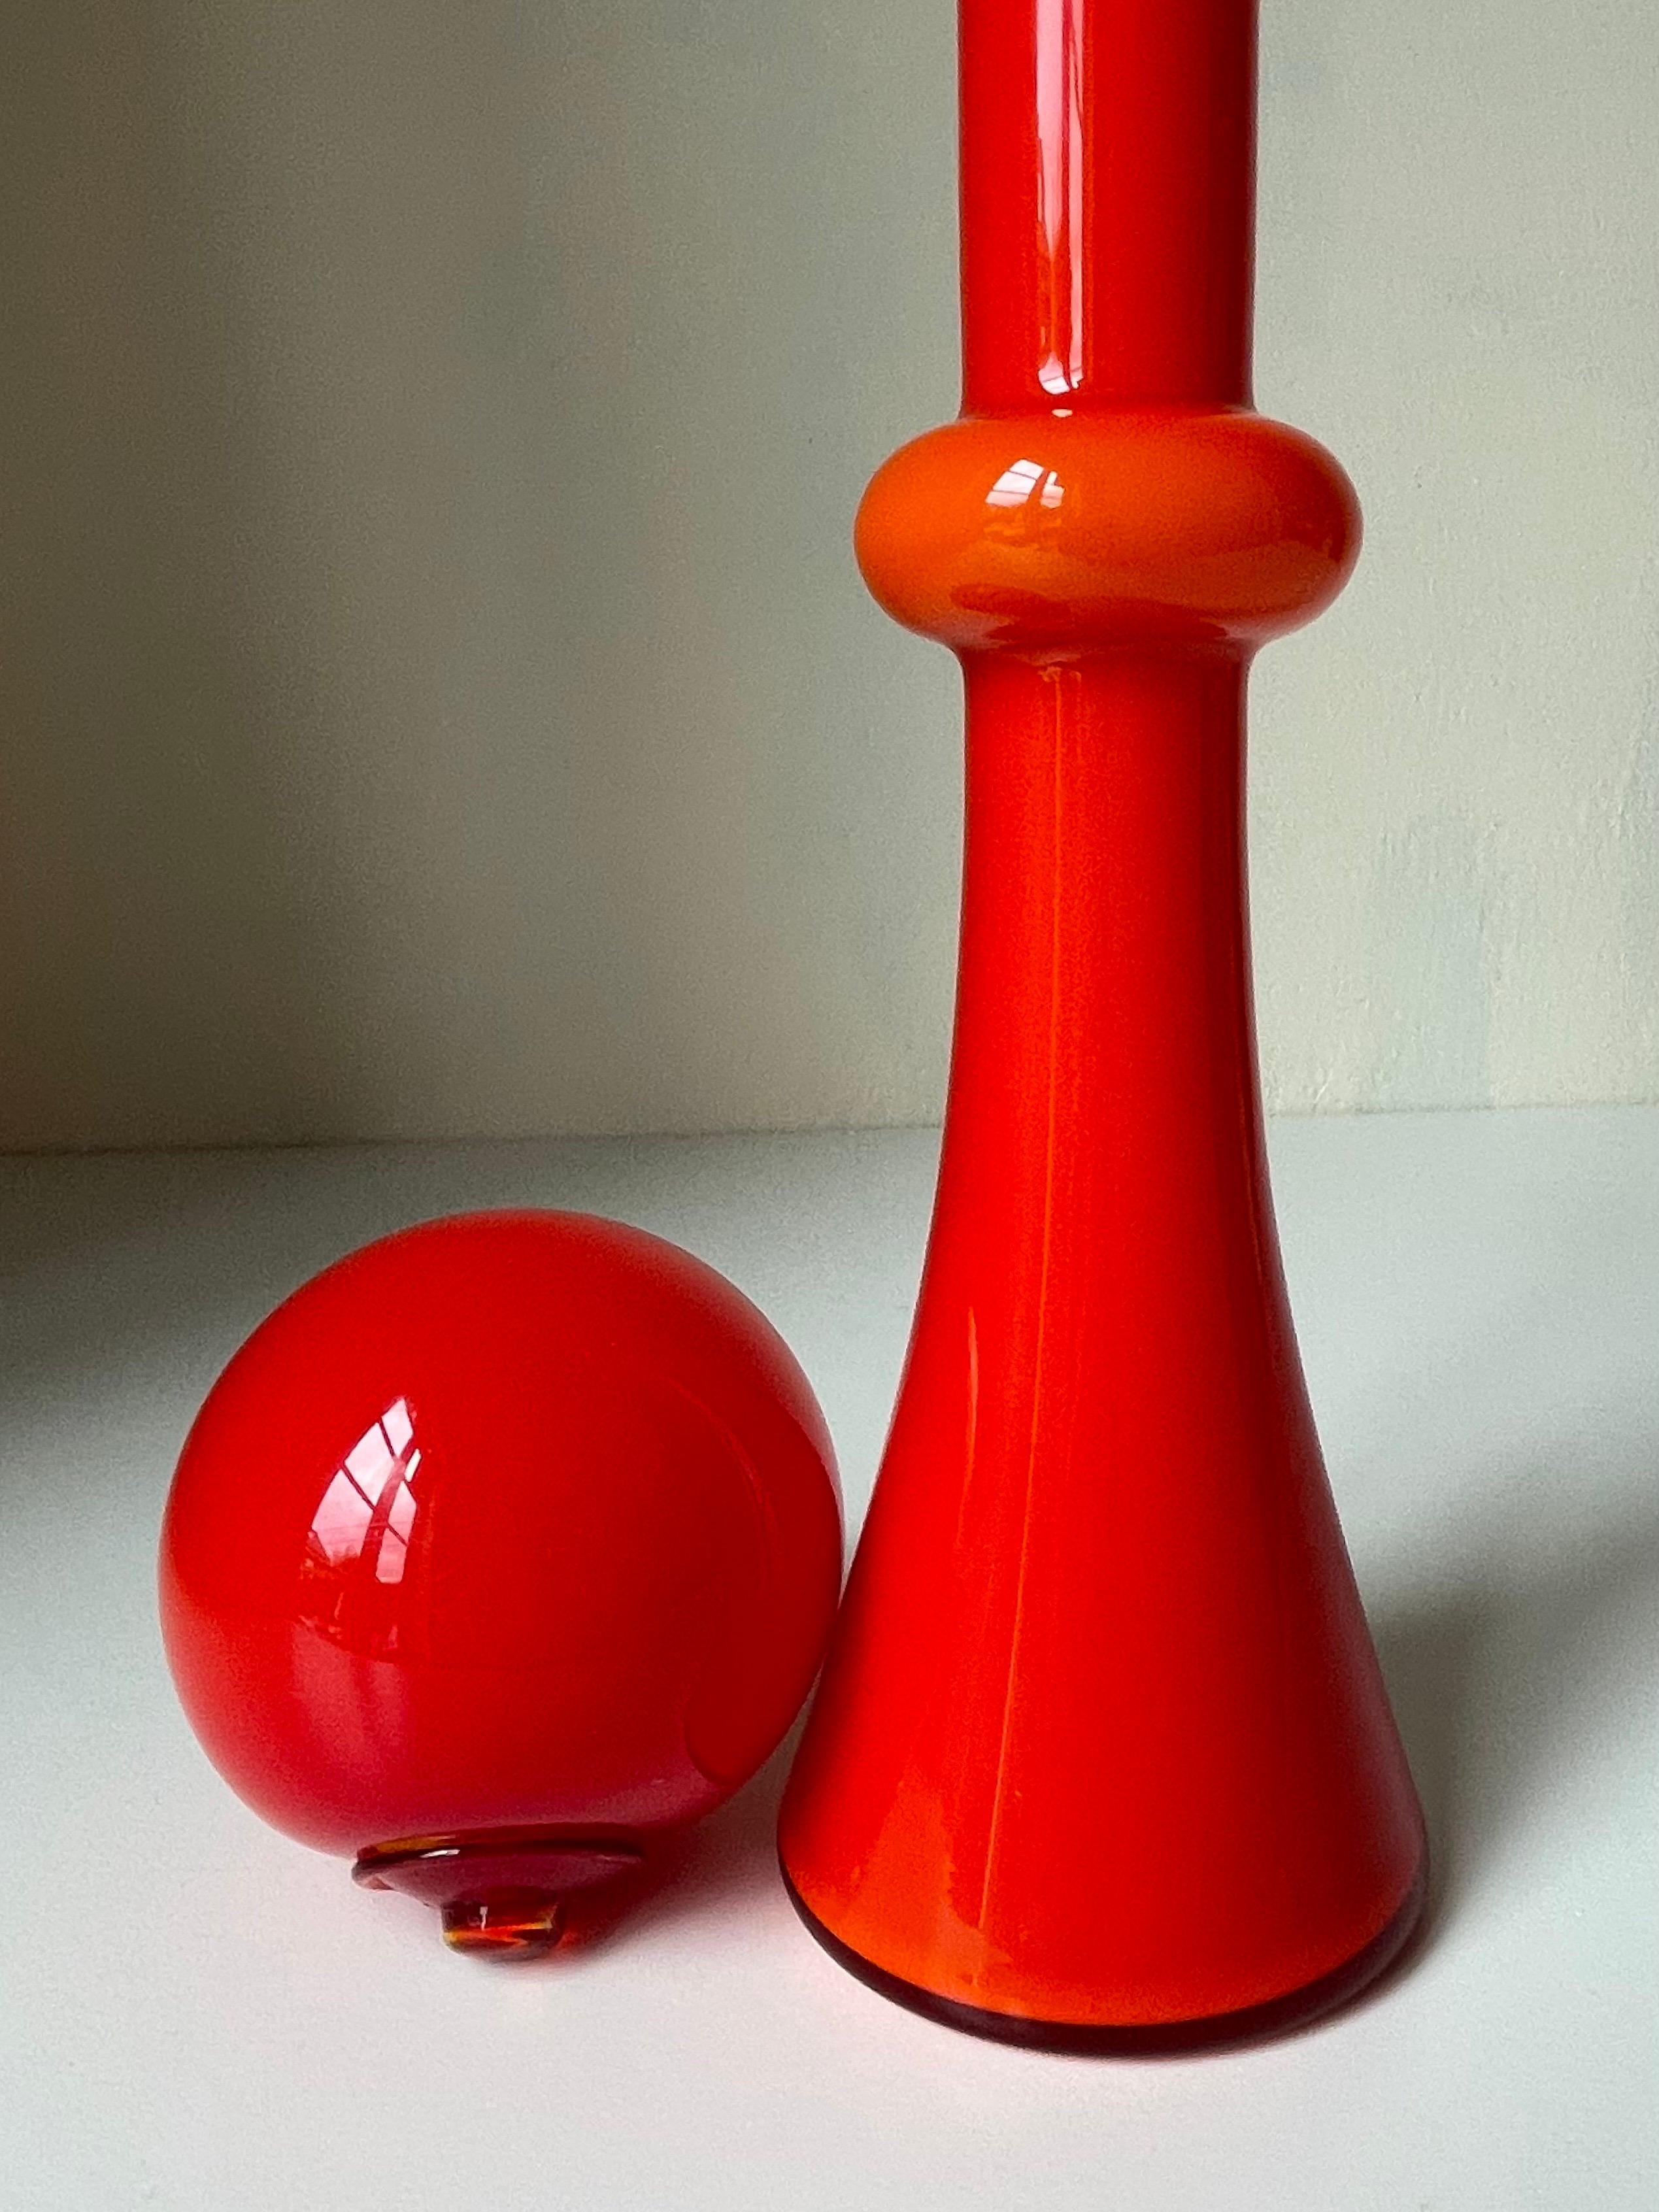 Holmegaard 1968 Red Pop Art Glass Vase with Globe, Denmark For Sale 1